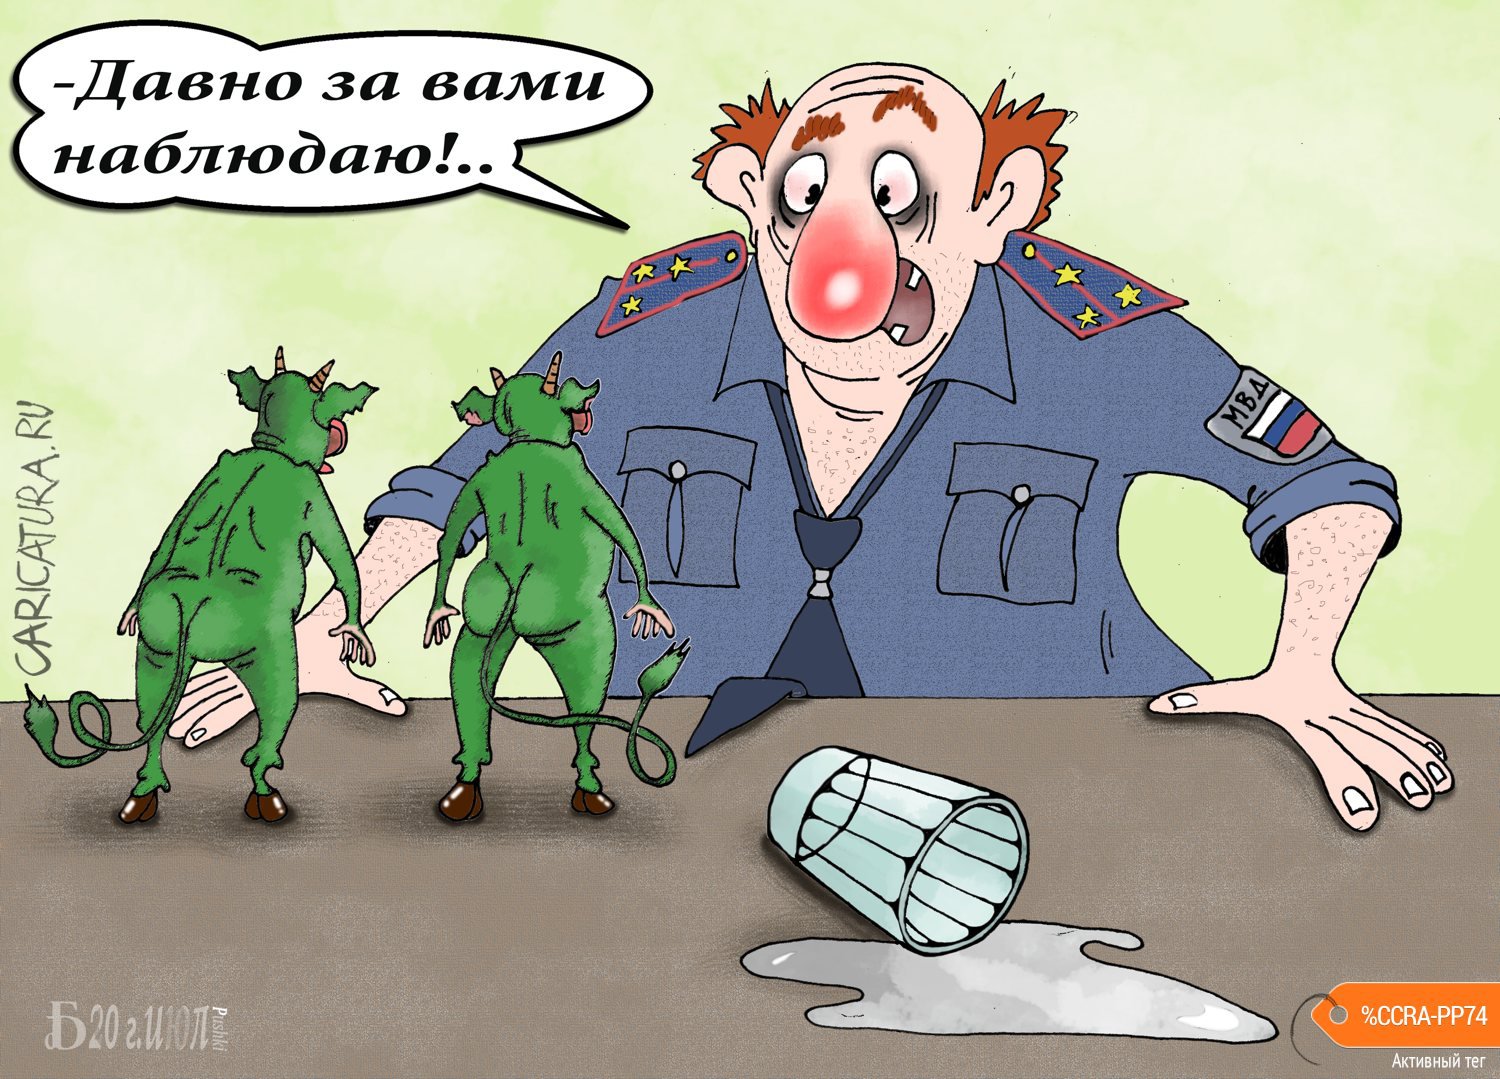 Карикатура "Про давноблюдателя", Борис Демин